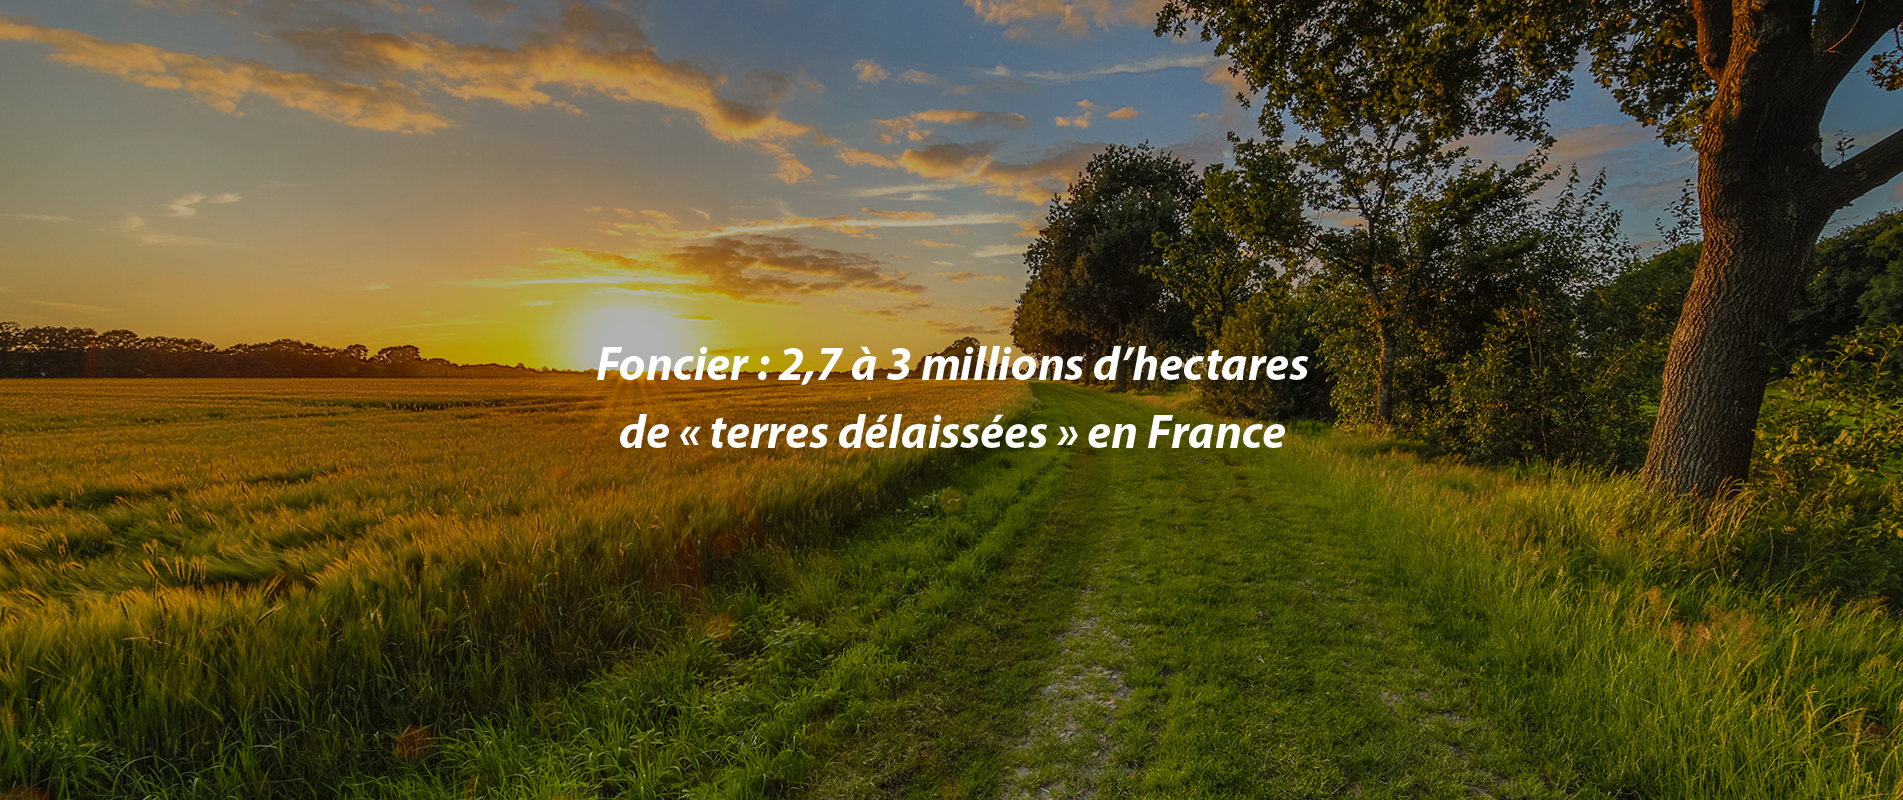 Foncier : 2,7 à 3 millions d’hectares de « terres délaissées » en France